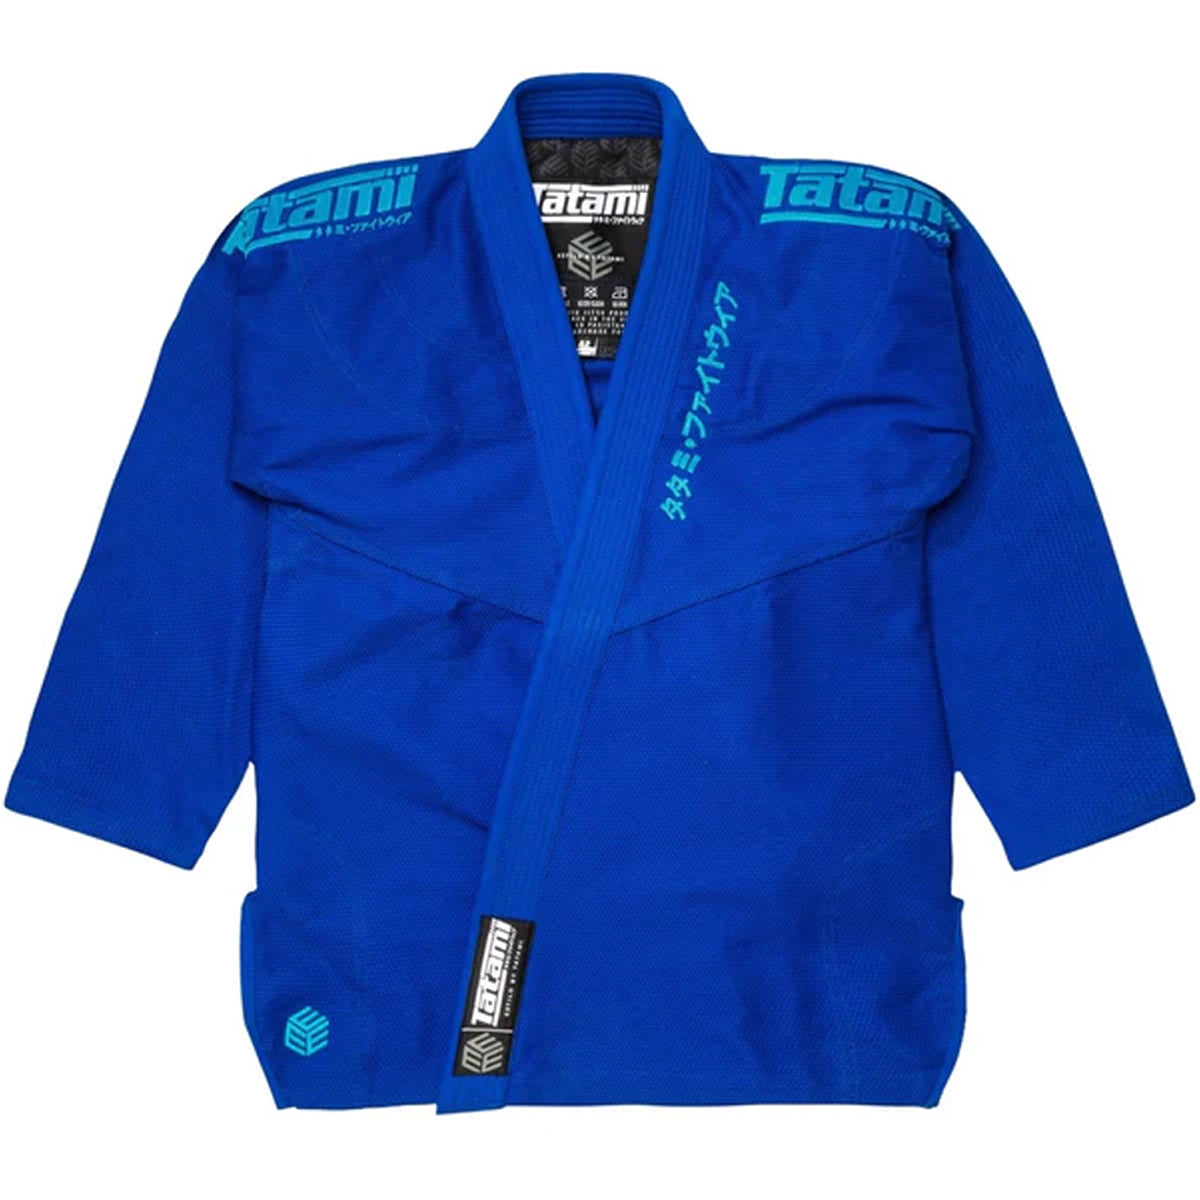 Tatami Fightwear Estilo Black Label BJJ Gi - Blue/Blue Tatami Fightwear